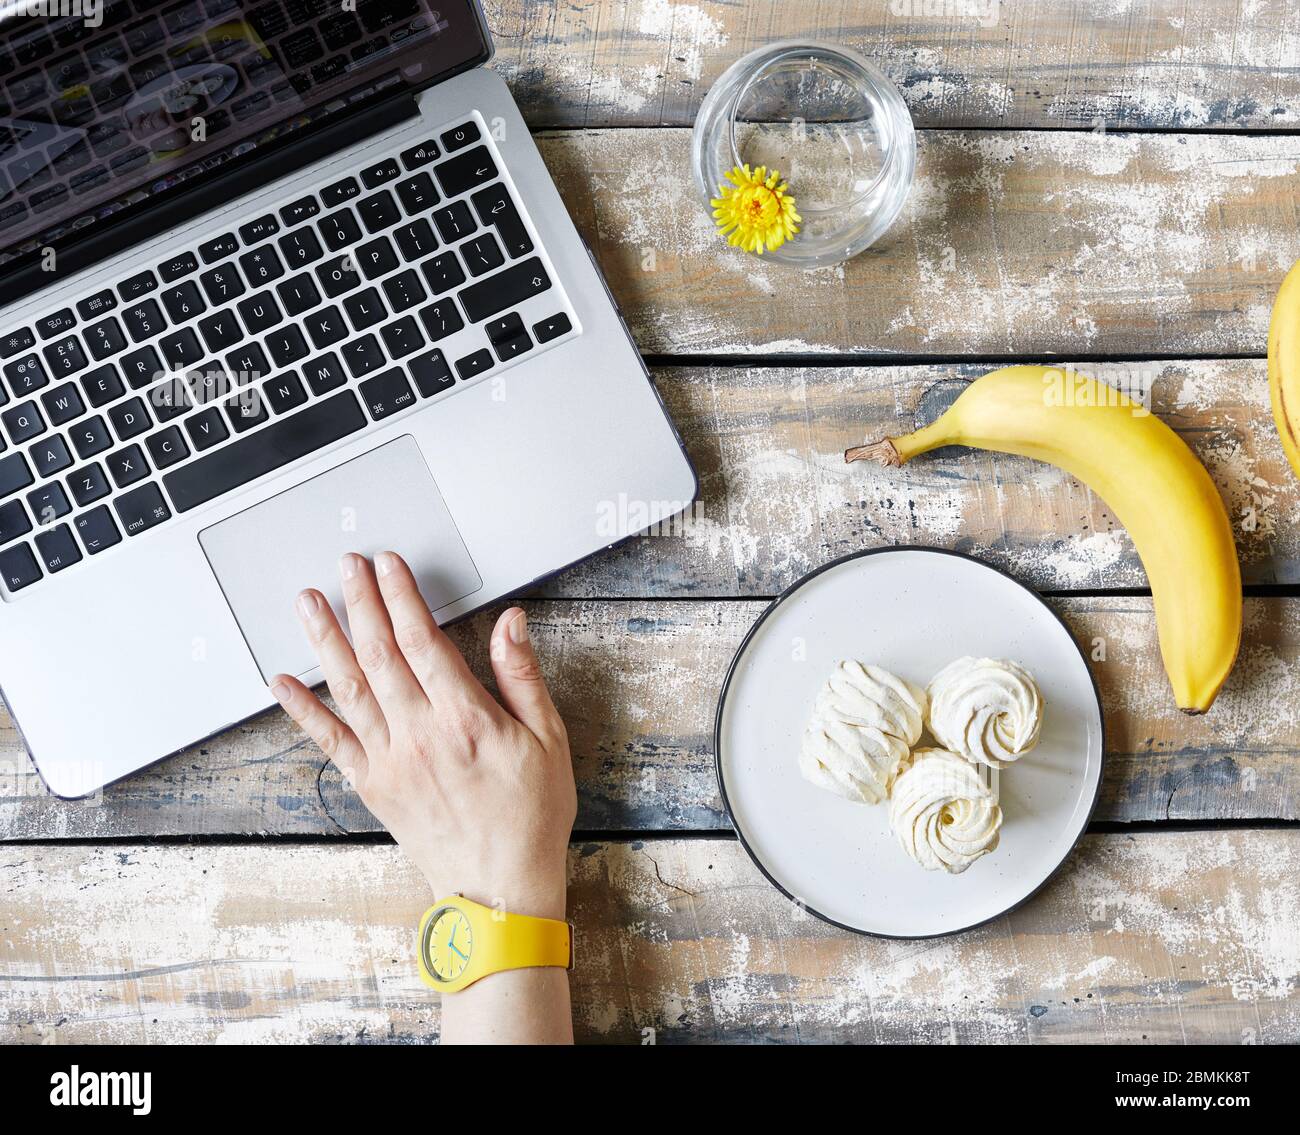 Femme travaillant à la maison et mangeant de la banane et doux maison Zephyr ou Marshmallow de la banane près de l'ordinateur portable sur la table en bois vue. Temps de pause Banque D'Images